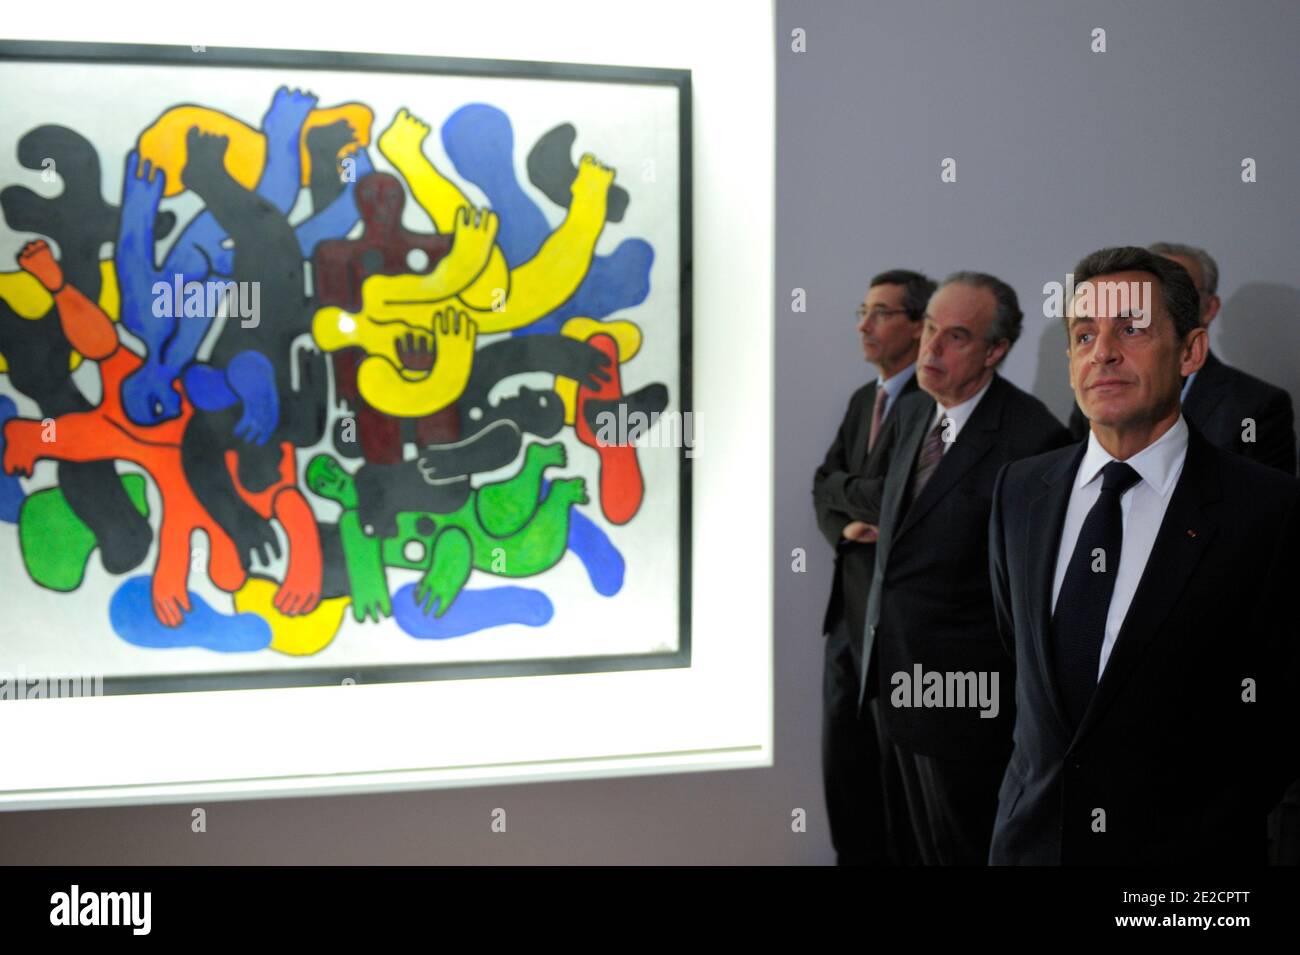 Le président français Nicolas Sarkozy (R) accompagné du ministre de la Culture, Frédéric Mitterrand (2ndR), se promène devant un tableau de Fernand Leger lorsqu'ils visitent le musée itinérant de Beaubourg à Chaumont, dans l'est de la France, le 13 octobre 2011. Photo de Philippe Wojazer/Pool/ABACAPRESS.COM Banque D'Images